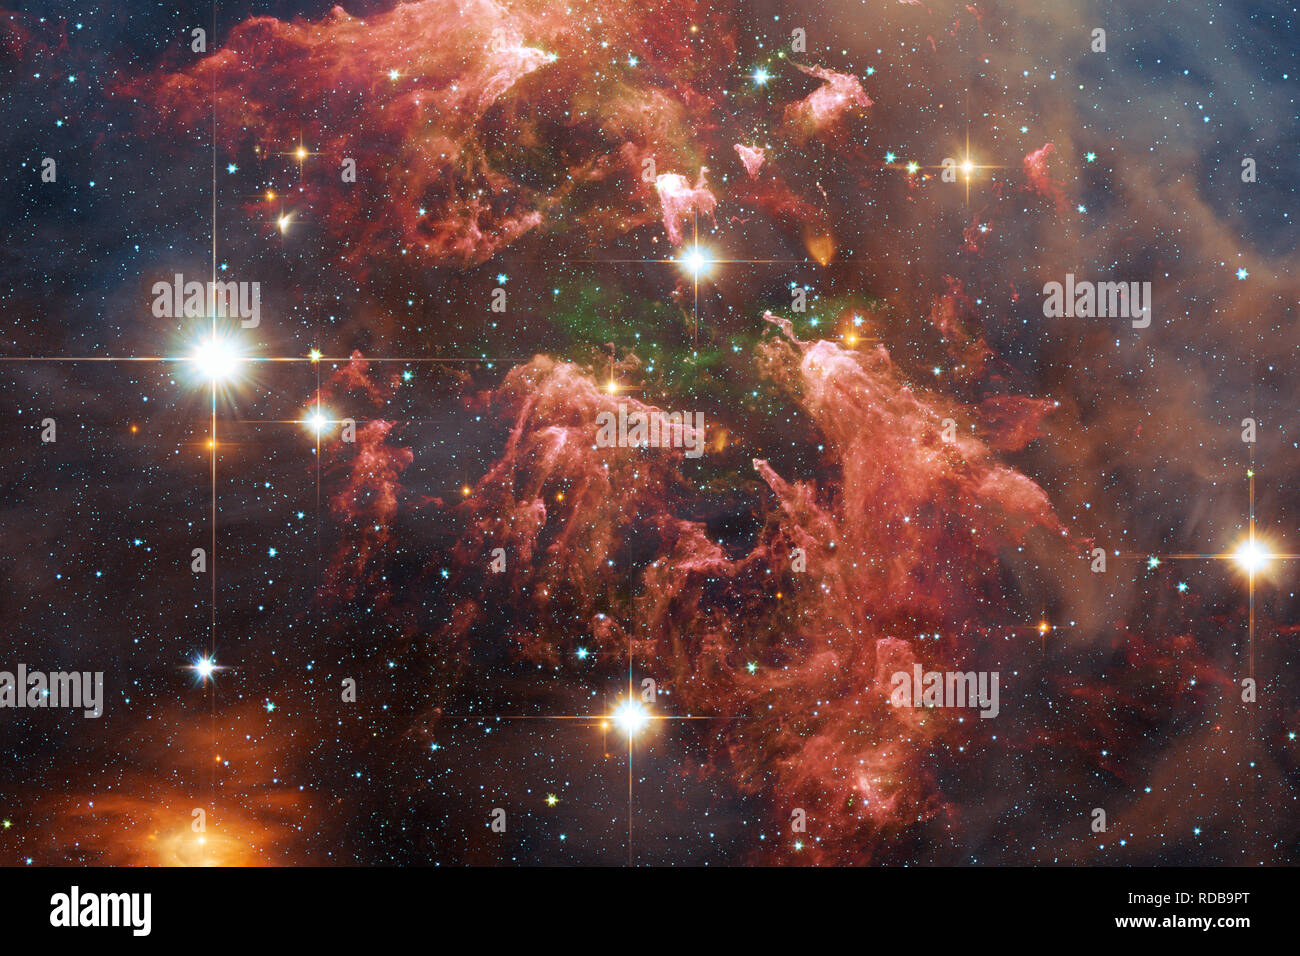 Nebel, Galaxien und Sterne in einer schönen Komposition. Deep Space Art Elemente dieses Bild von der NASA eingerichtet. Stockfoto